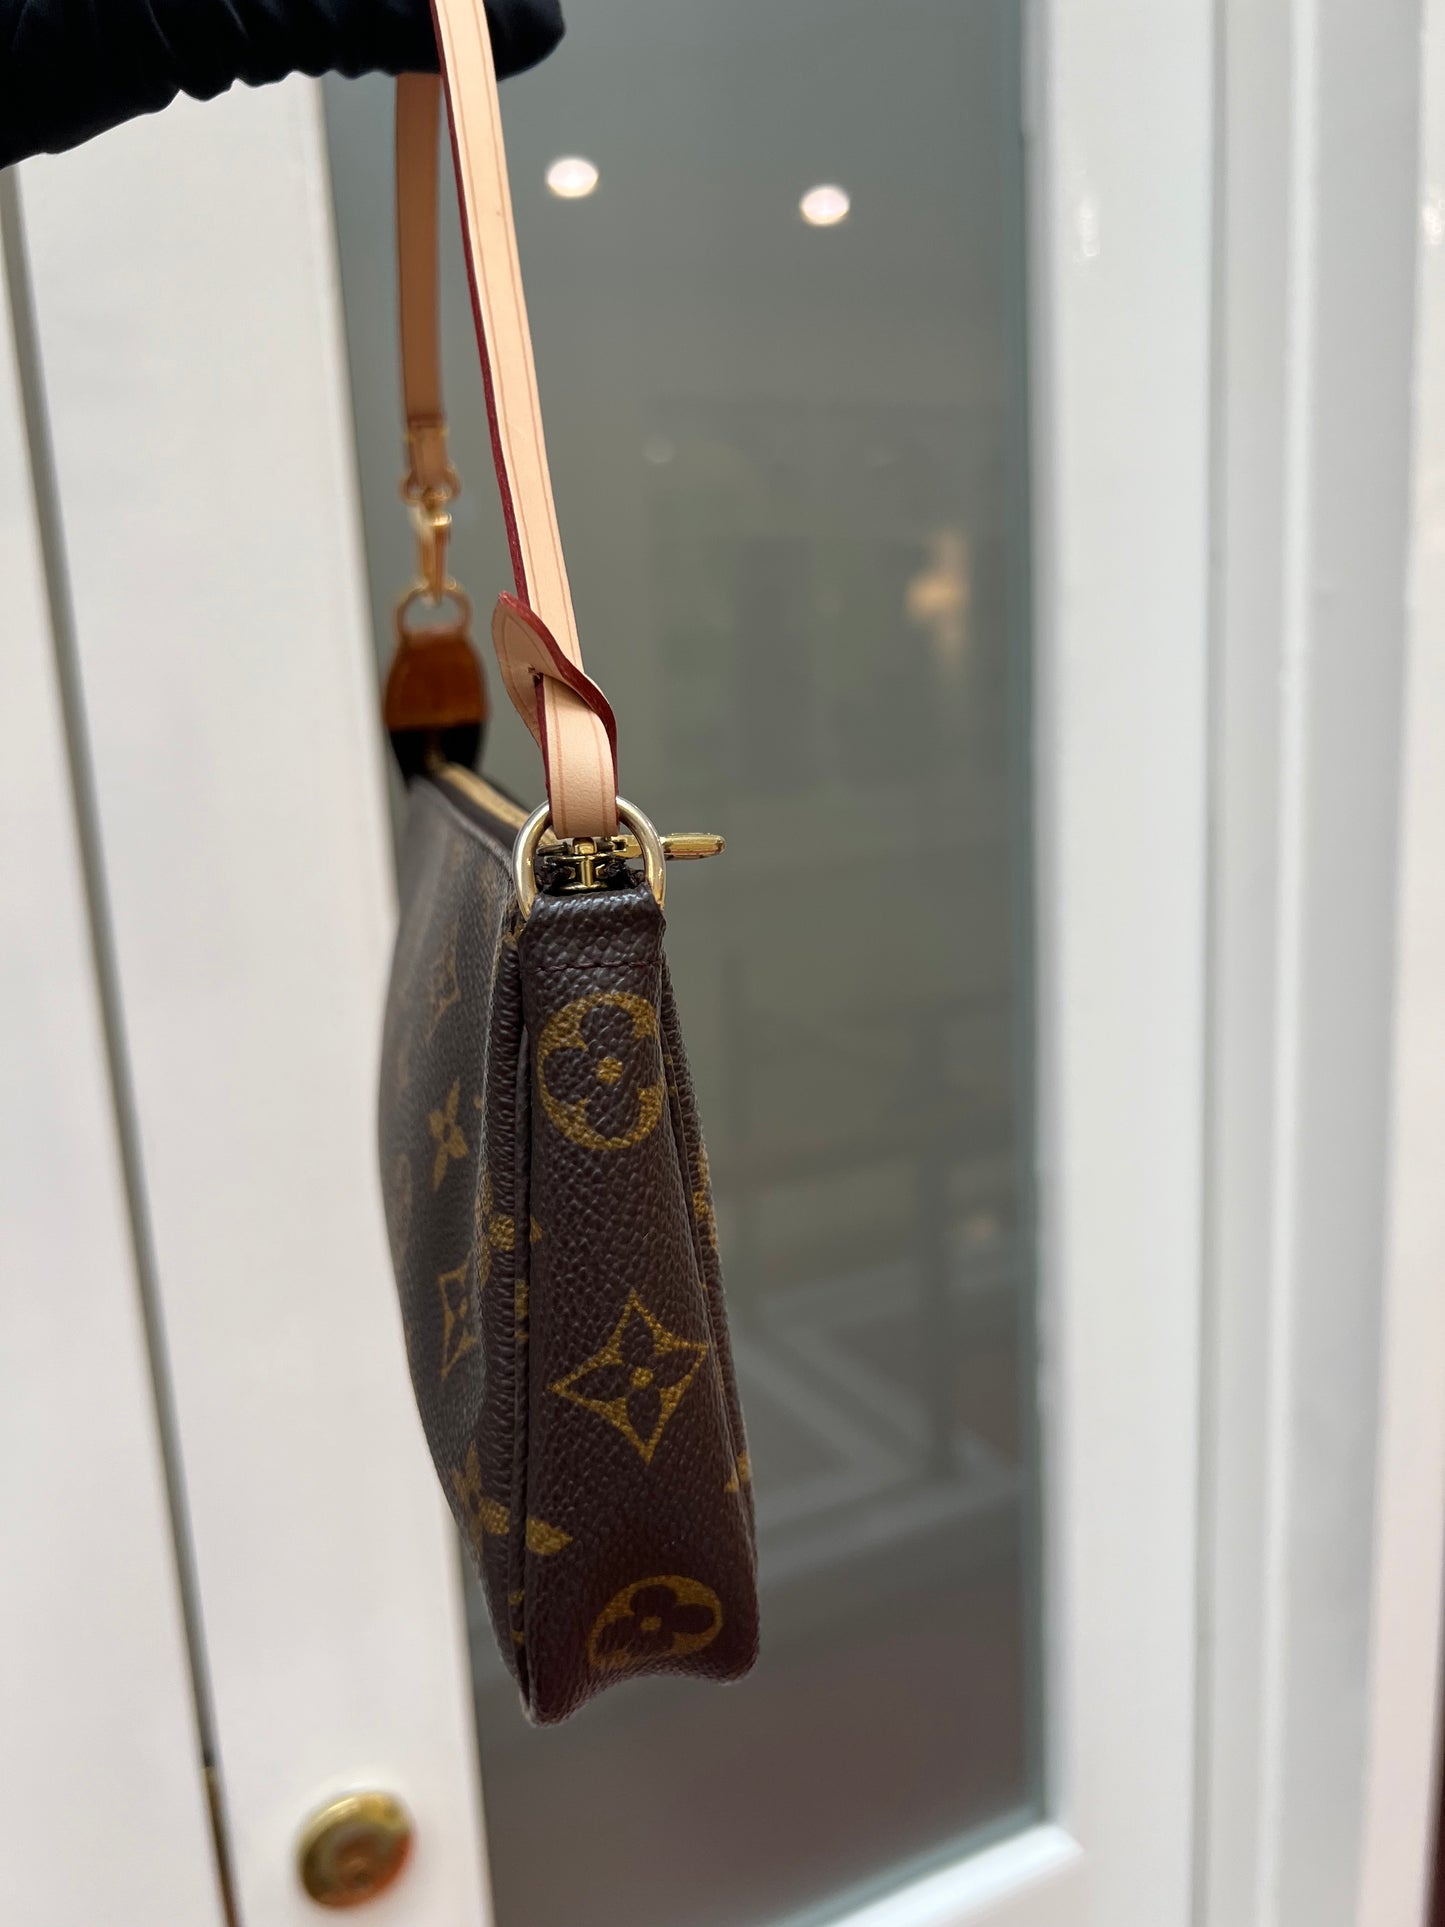 Pre-loved Authentic Louis Vuitton Pochette Accessoire Handbag